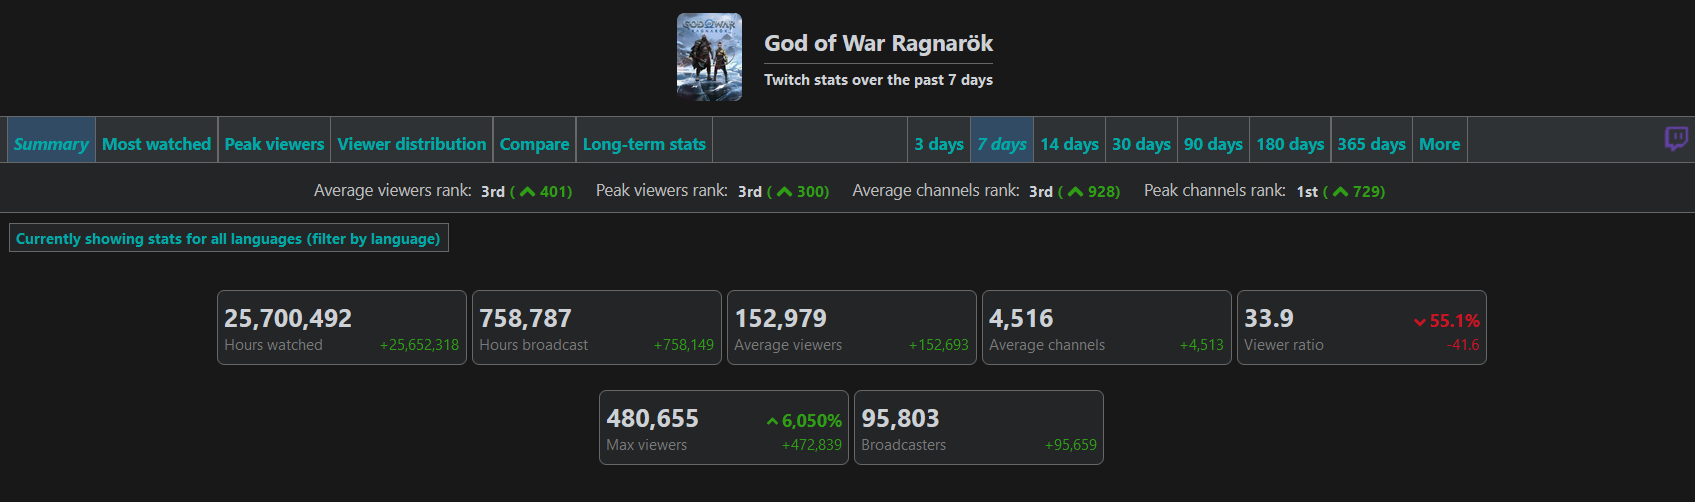 480 тисяч глядачів та 22 мільйони годин перегляду: статистика God of War Ragnarok на Twitch показує інтерес фанатів до гри-2